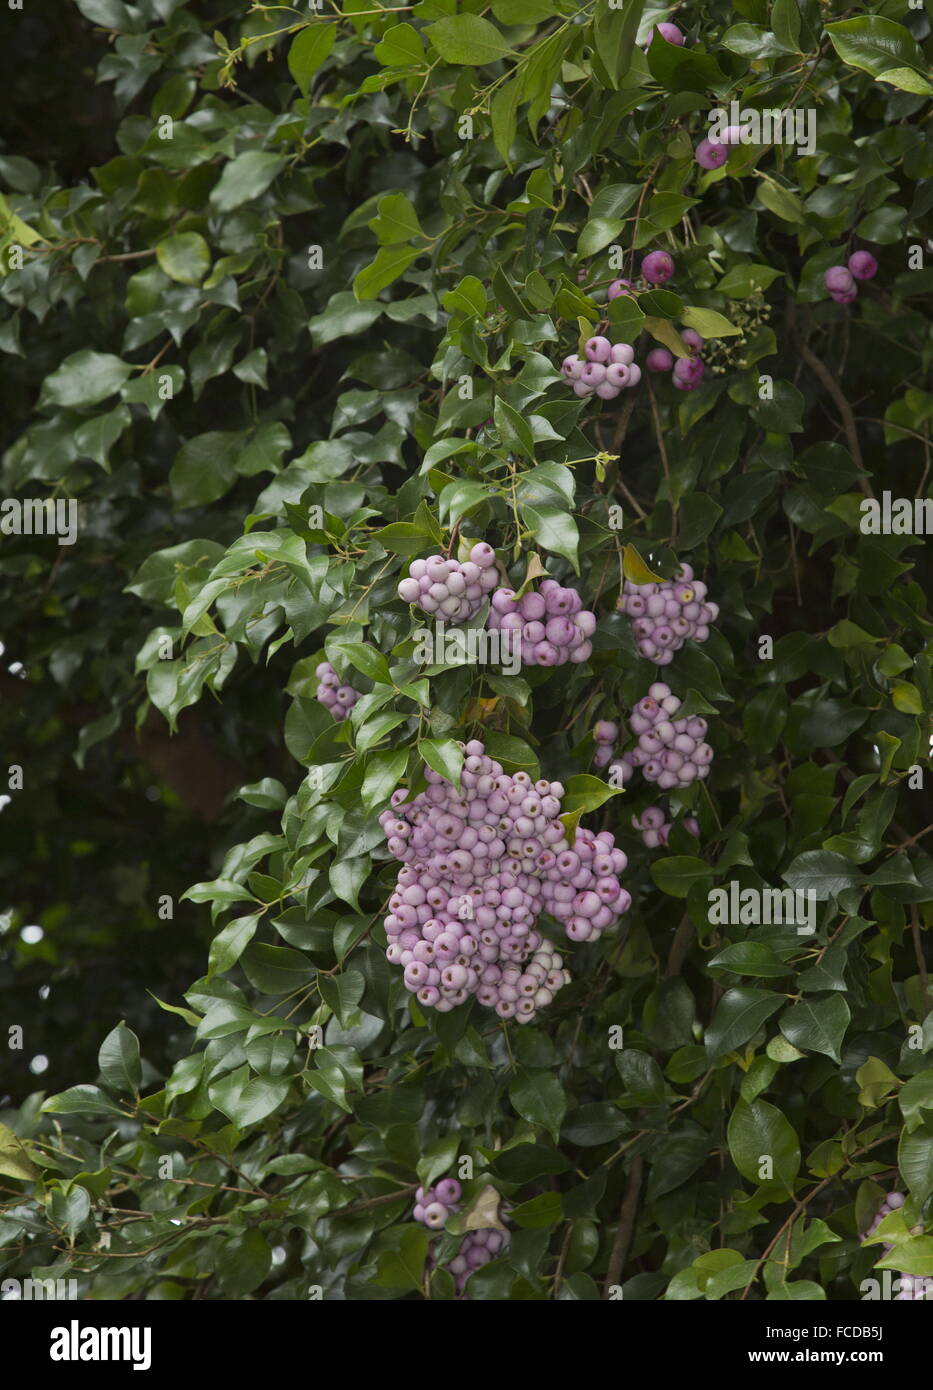 Lilly-pilly tree, Syzygium smithii, in fruit, Australia Stock Photo